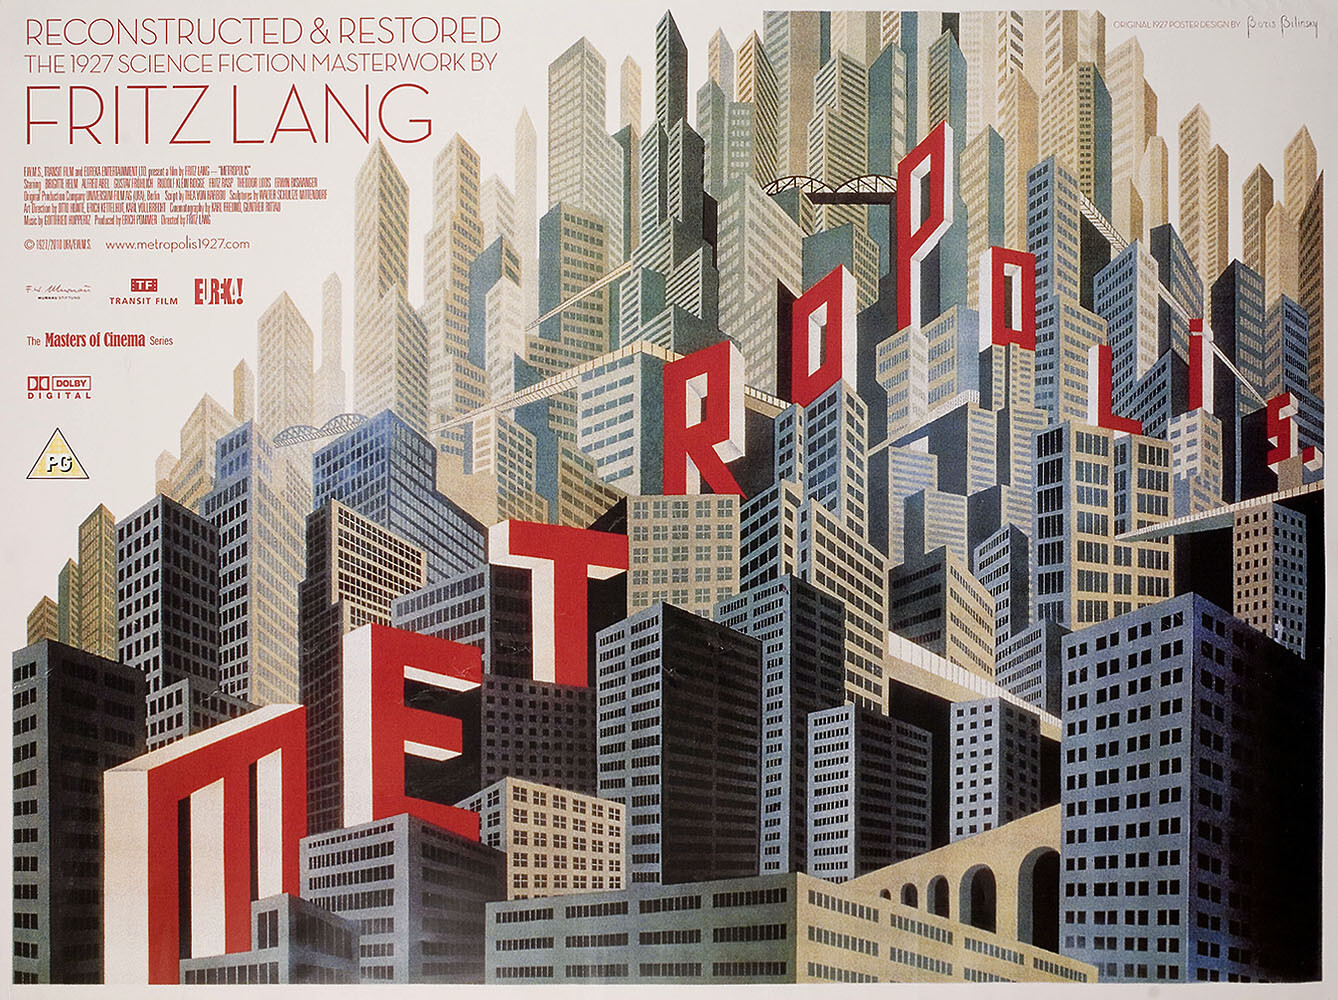 Метрополис (Metropolis, 1927), режиссёр Фриц Ланг, постер к фильму в стиле ар-деко (Британия, 2010 год), автор Борис Билинский